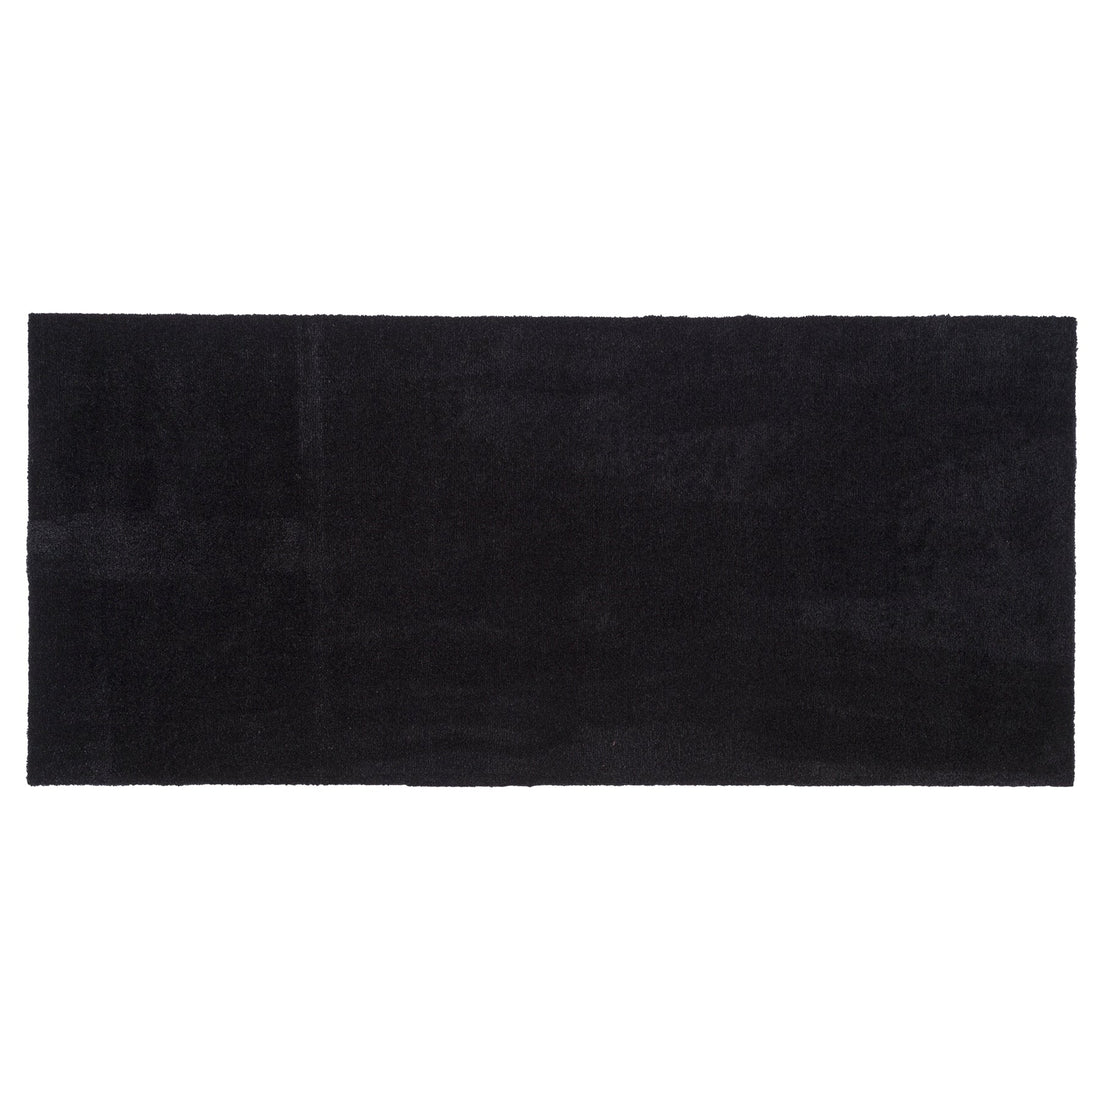 MEDIDA GULF 67 x 150 CM - UNI COLOUR/BLACK